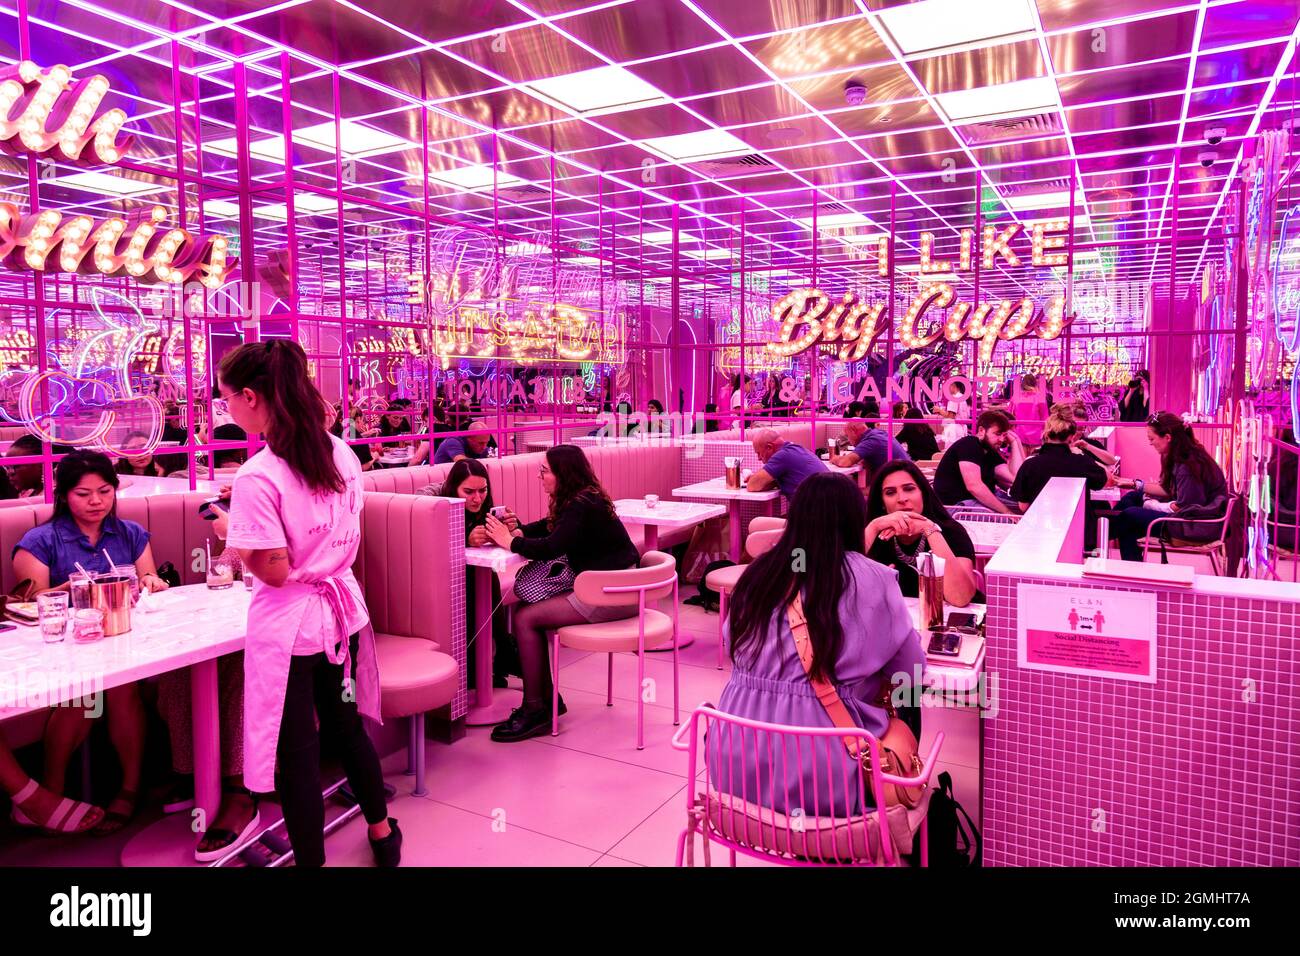 Im El&N Soho Café, London, Großbritannien, befindet sich ein in Retro verspiegeltes, pinkfarbenes Interieur mit Markelampen Stockfoto